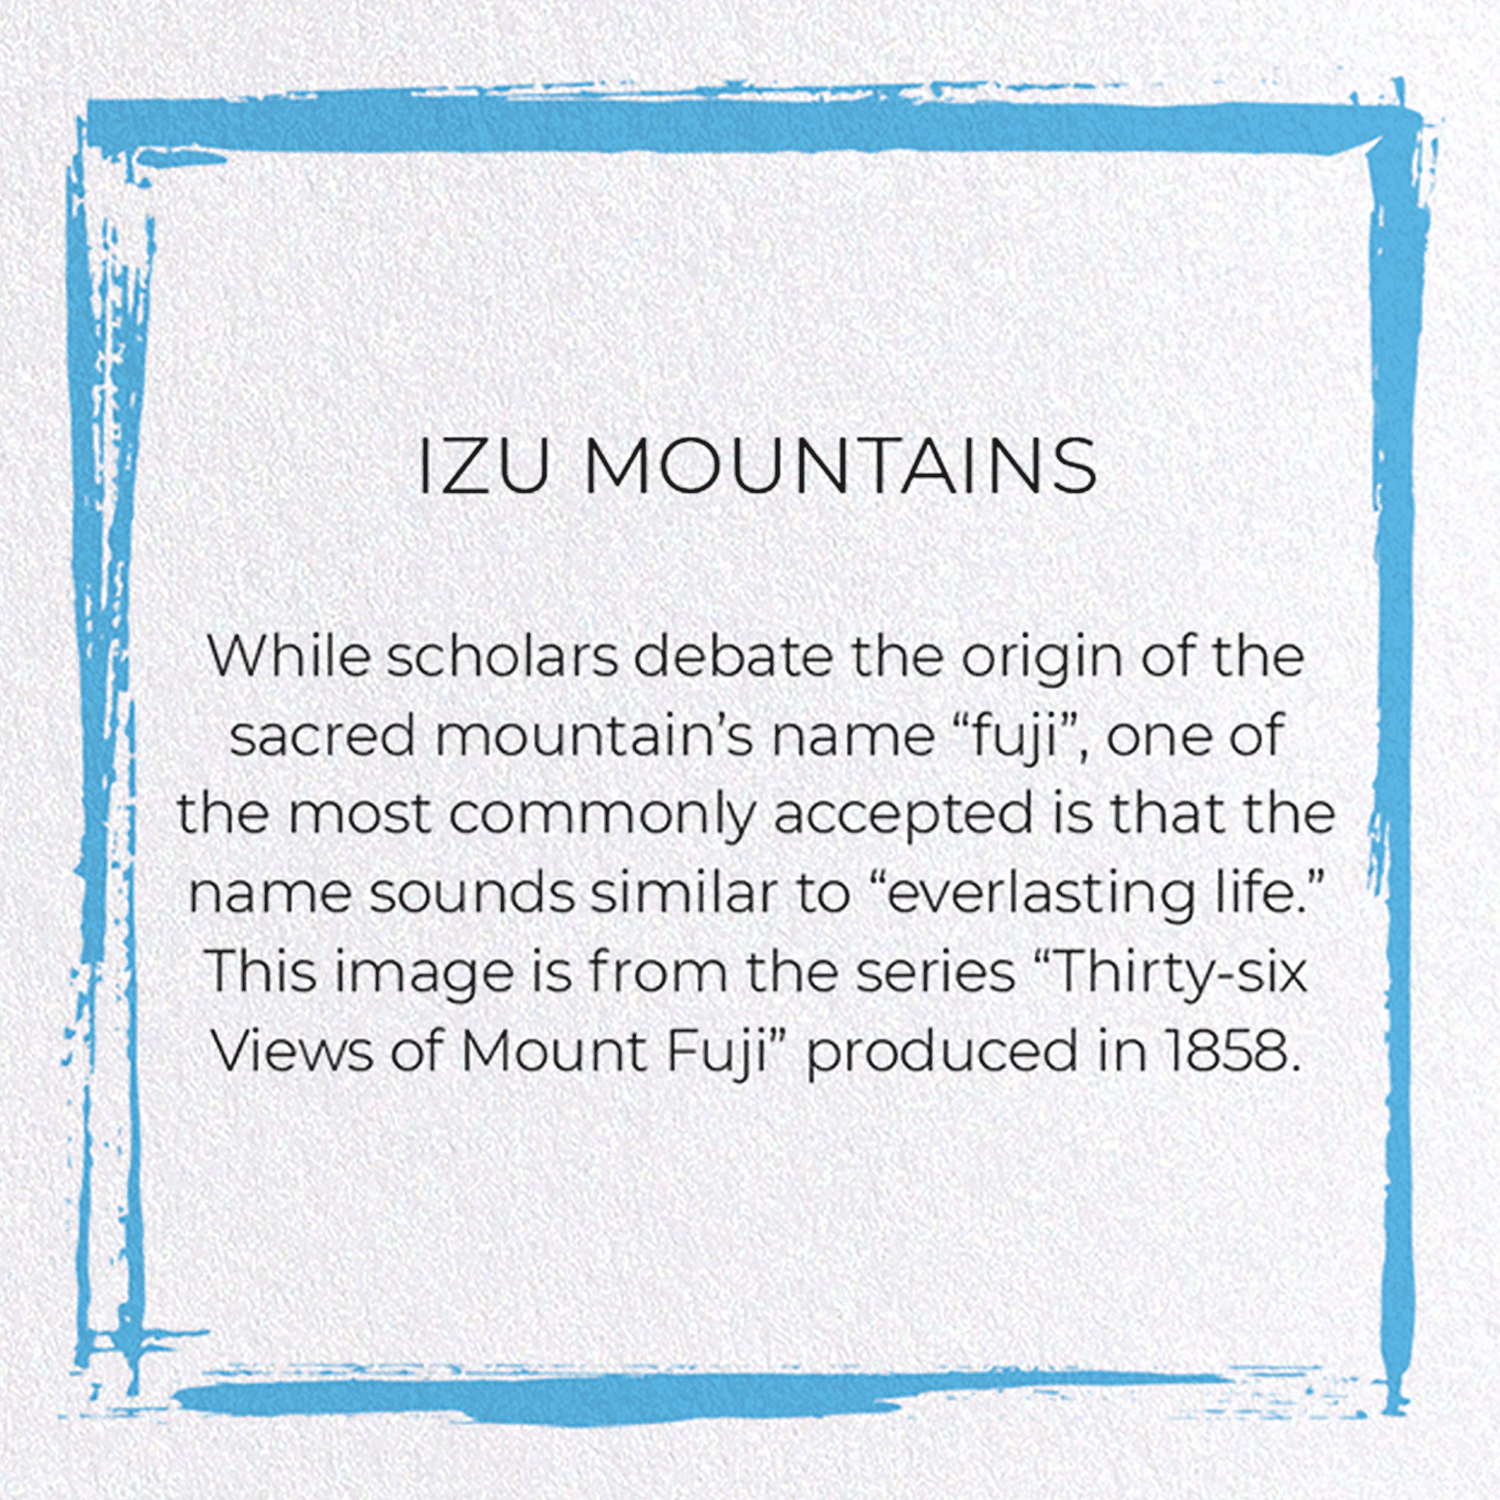 IZU MOUNTAINS